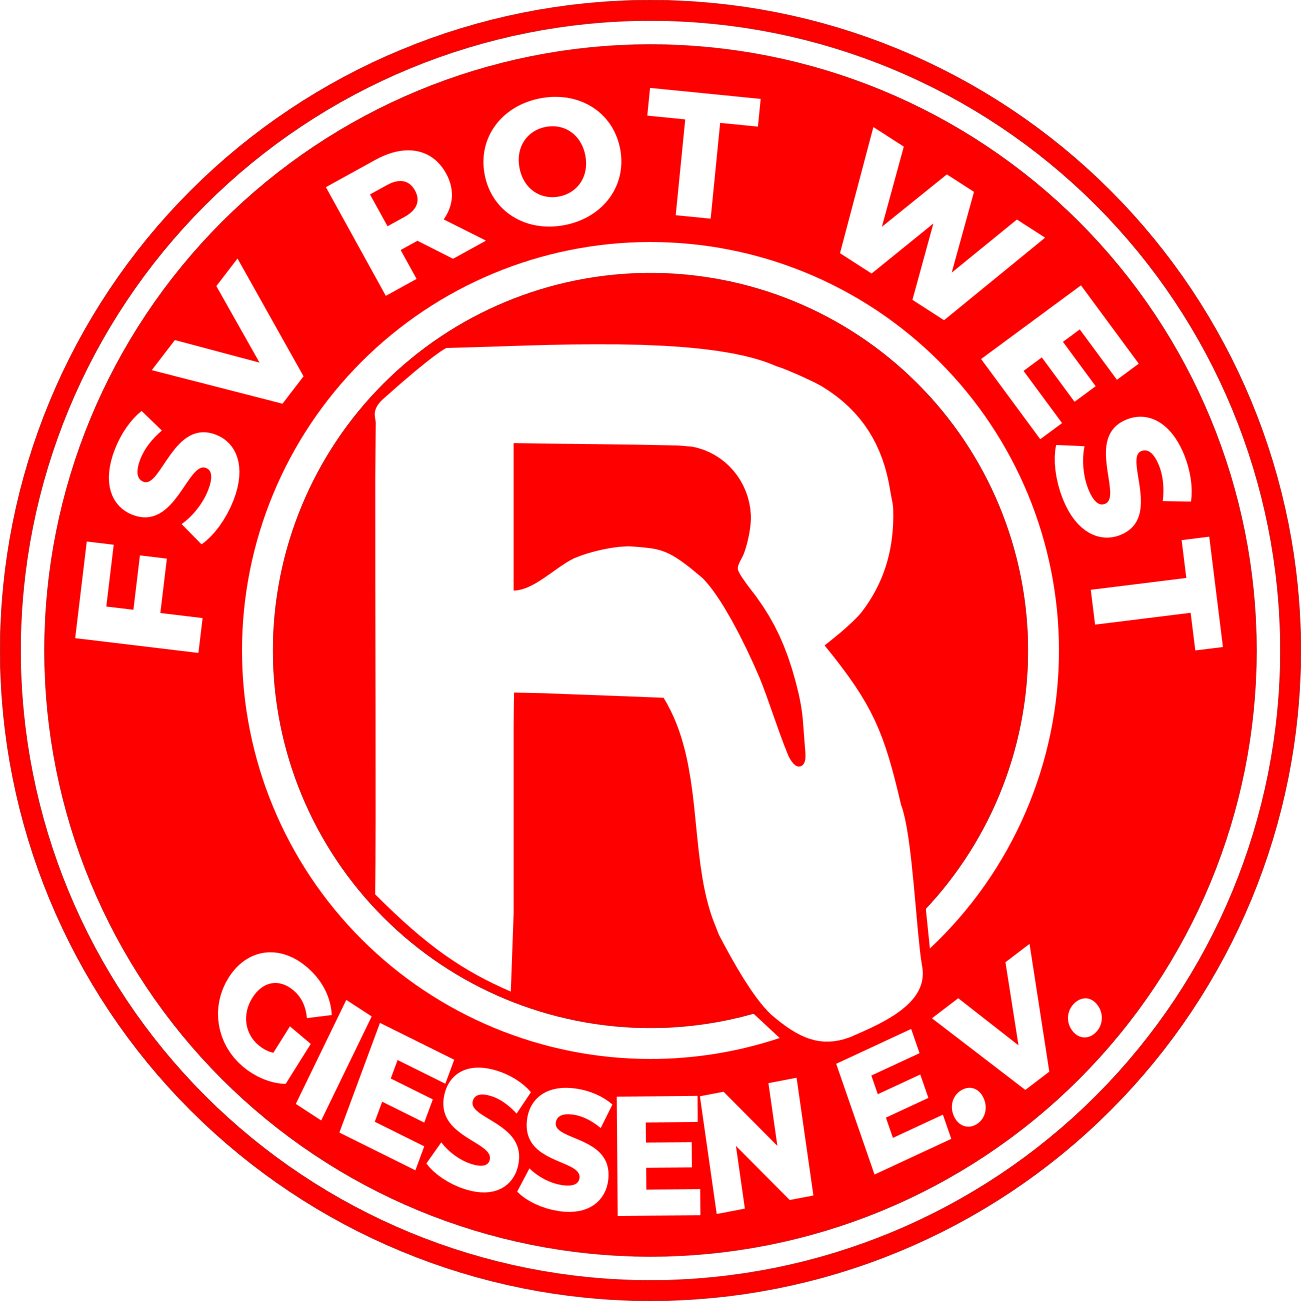 FSV Rot West Gießen e.V.